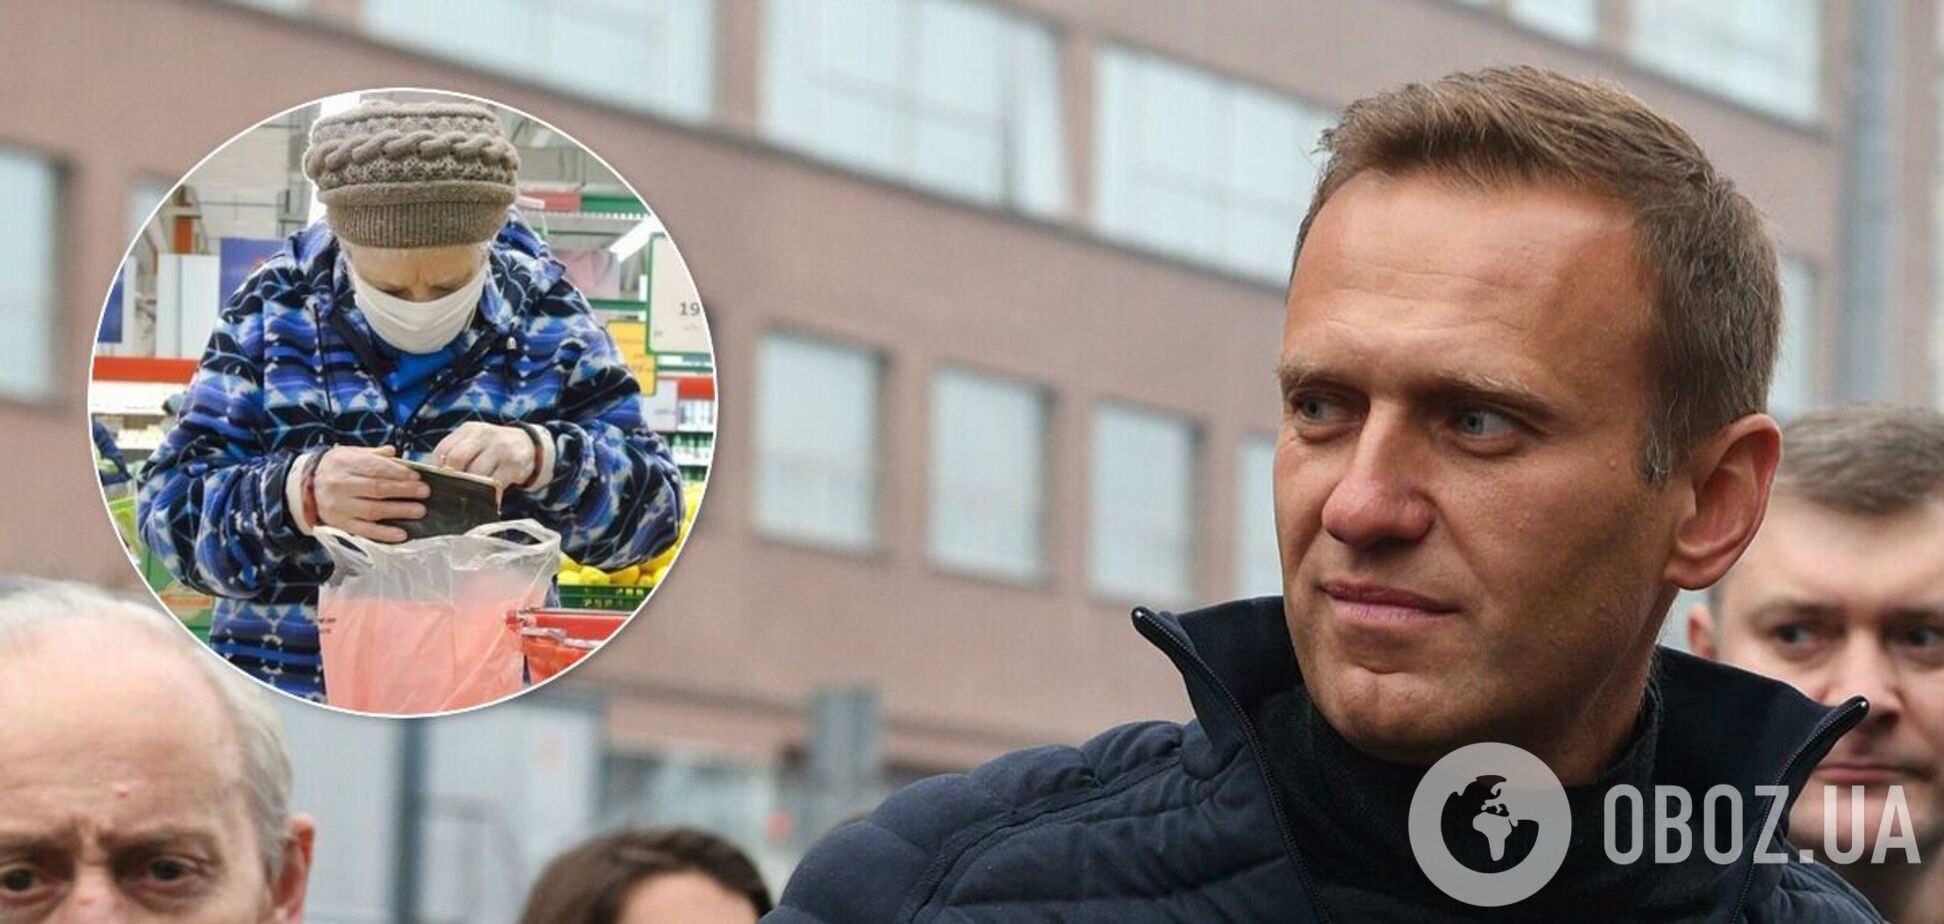 Российские СМИ пишут, что у Навального 'болезнь'